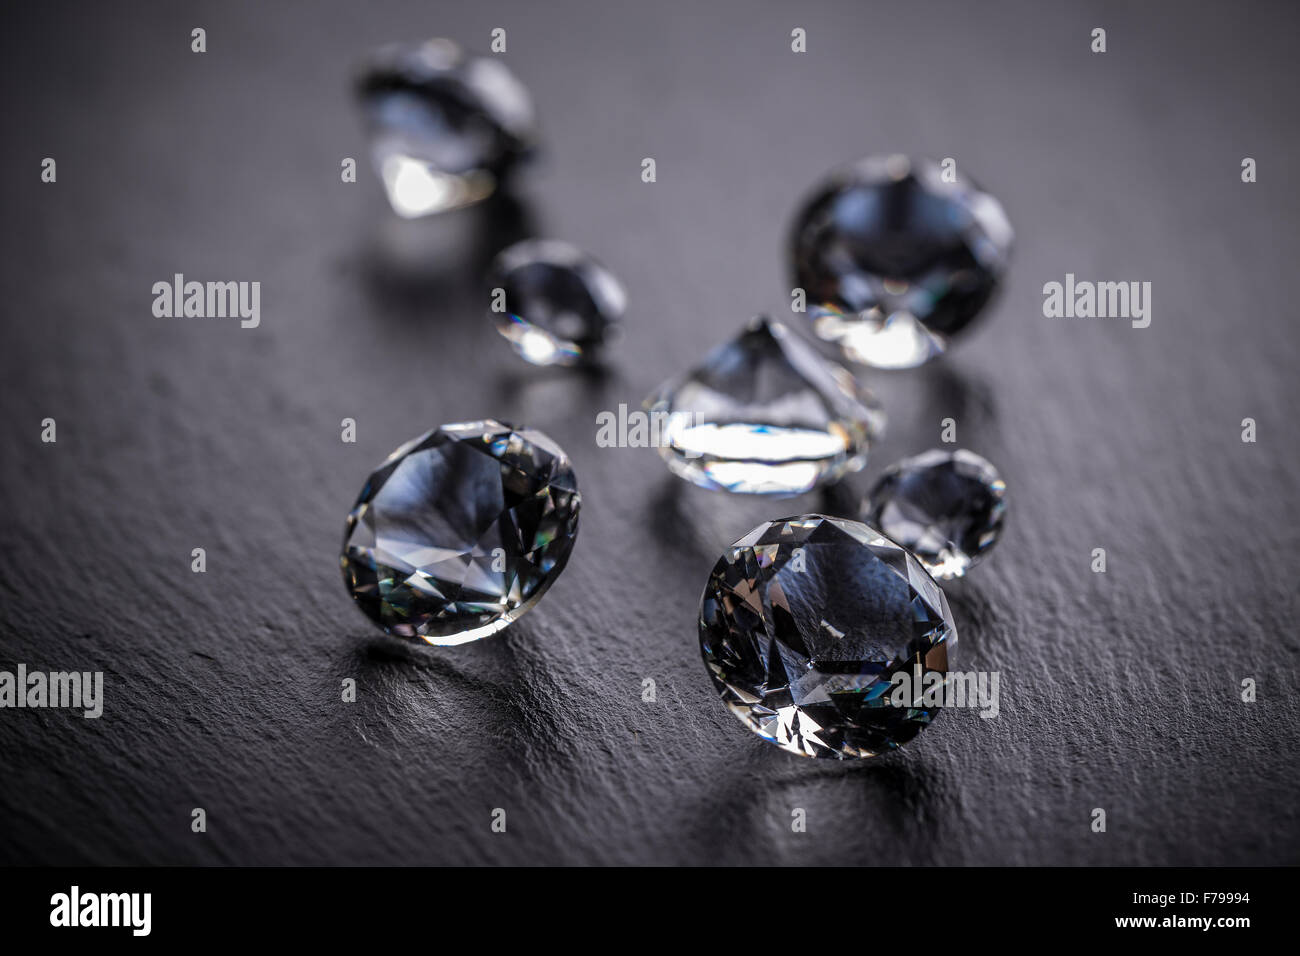 Chào mừng đến với bức ảnh rực rỡ sắc màu với những viên kim cương đen tuyệt đẹp. Với sự đẳng cấp và sang trọng của mình, kim cương đen sẽ khiến bạn say mê ngay từ cái nhìn đầu tiên. Hãy xem bức ảnh và cảm nhận được sự tuyệt vời của những viên kim cương nhé! 